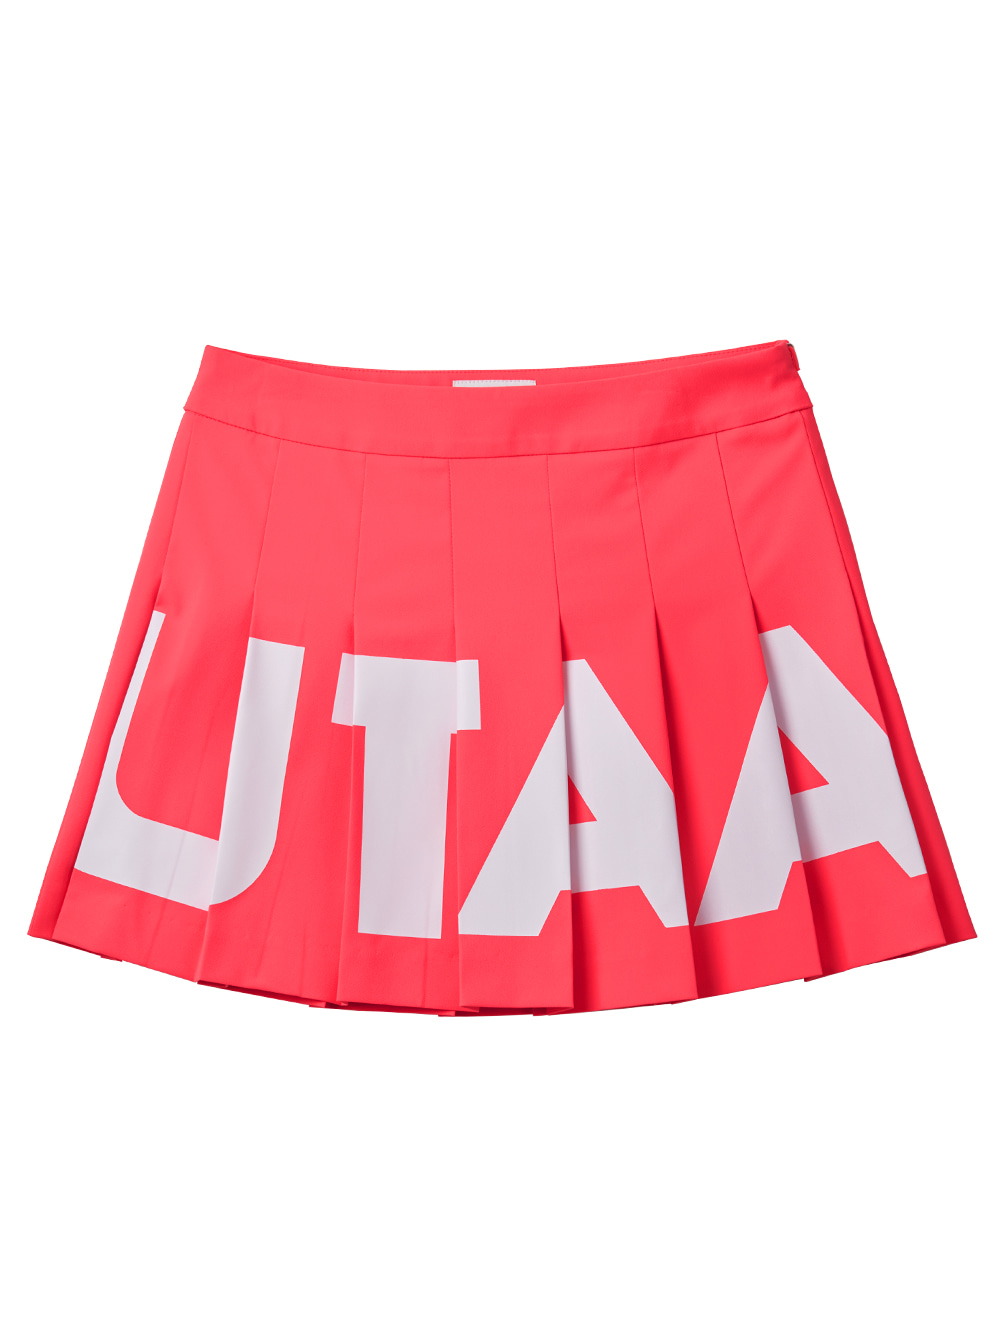 UTAA Bold Neon Skirt : Pink (UA2SKF531PK)